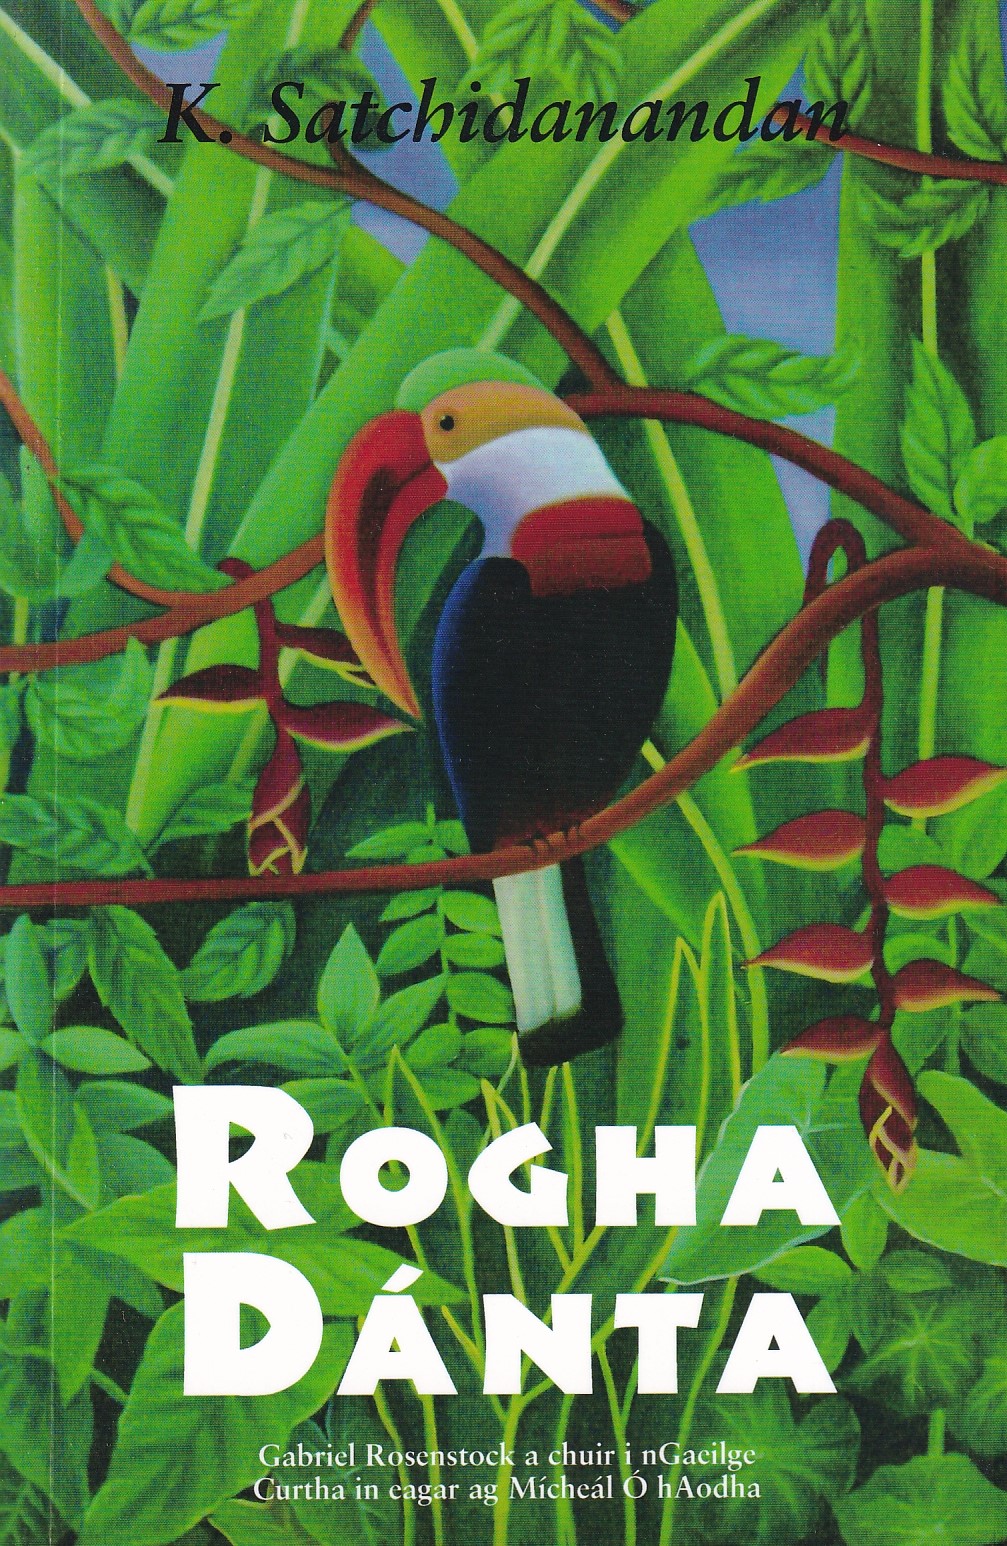 Rogha Dánta by K. Satchidanandan